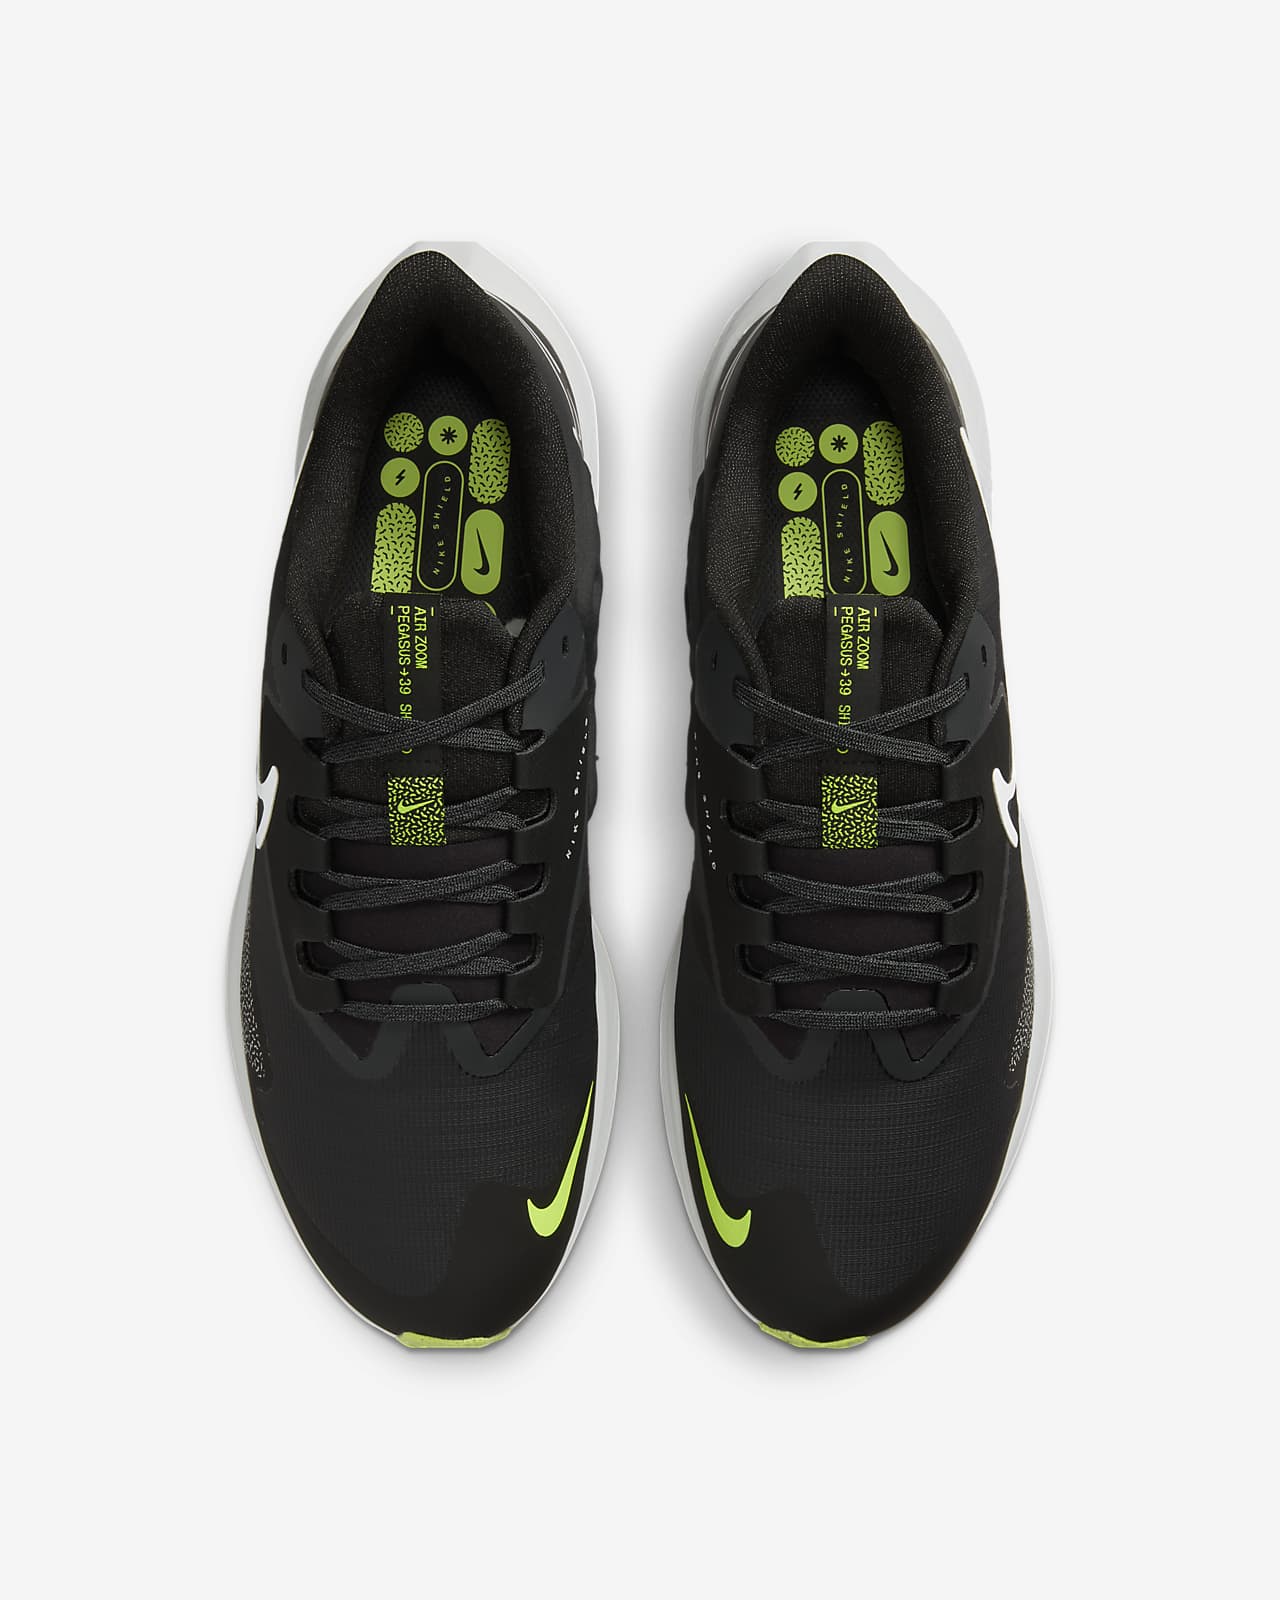 Nike Pegasus Shield Zapatillas de running para asfalto para mal tiempo - Hombre. Nike ES